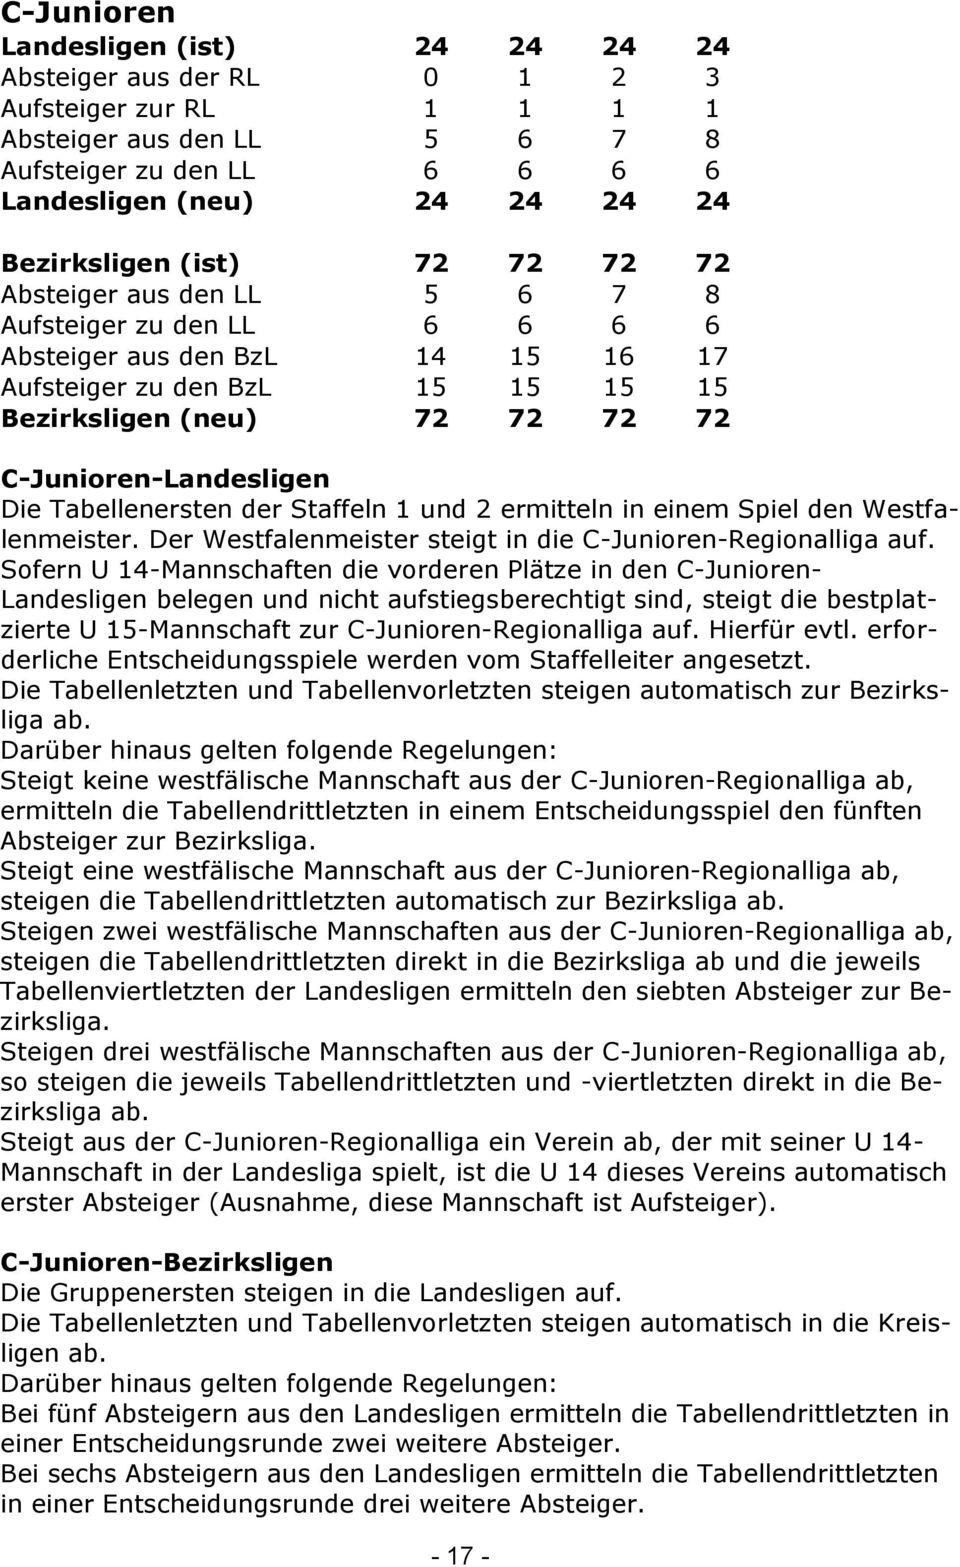 Die Tabellenersten der Staffeln 1 und 2 ermitteln in einem Spiel den Westfalenmeister. Der Westfalenmeister steigt in die C-Junioren-Regionalliga auf.